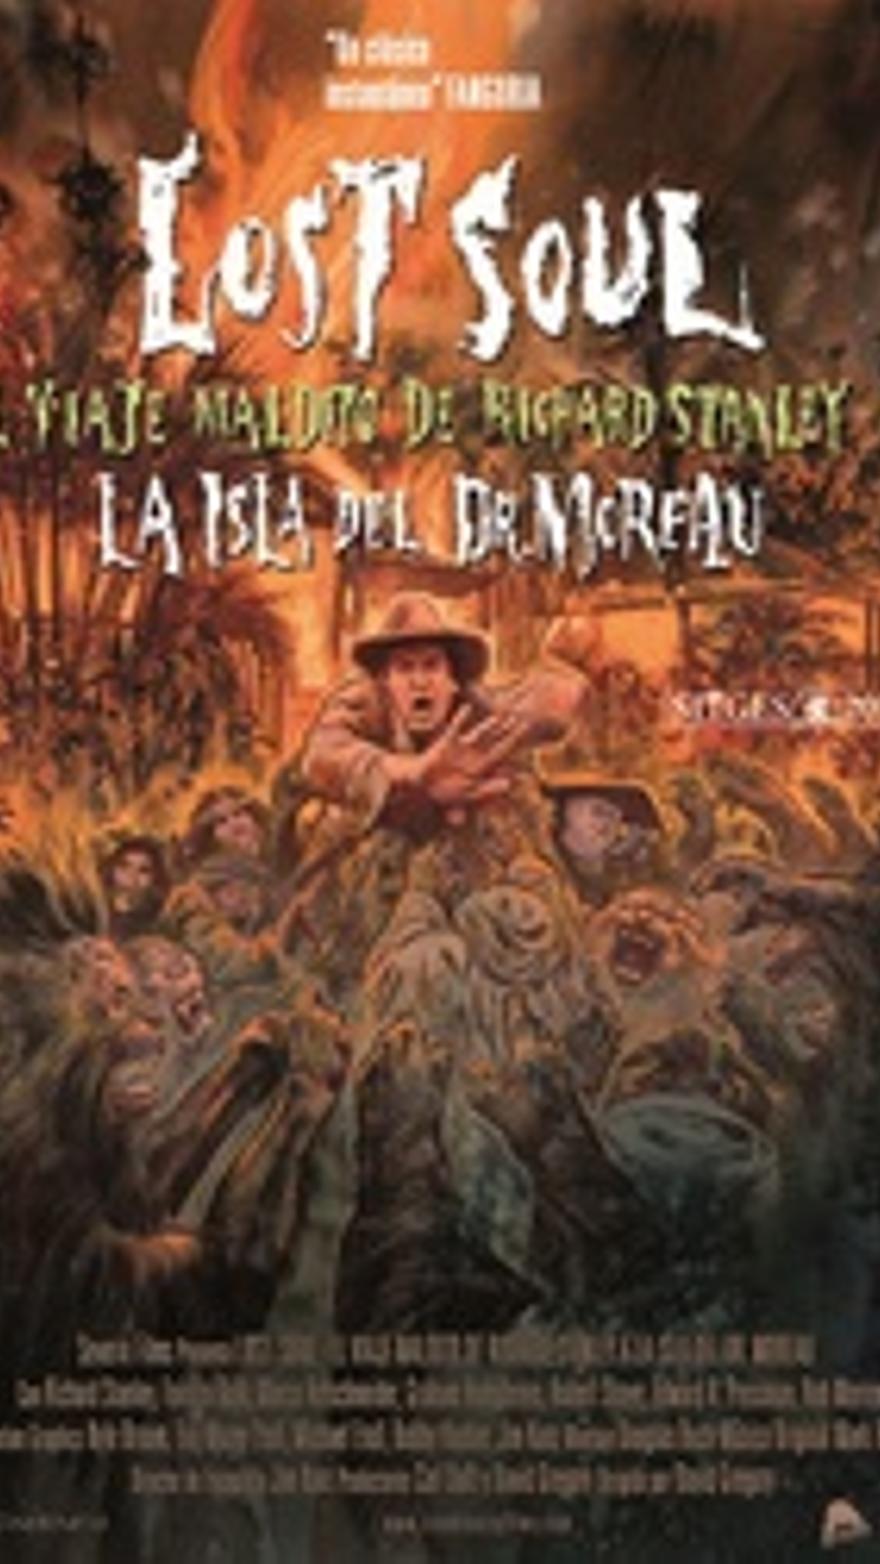 Lost Soul: El viaje maldito de Richard Stanley a la isla del Dr. Moreau